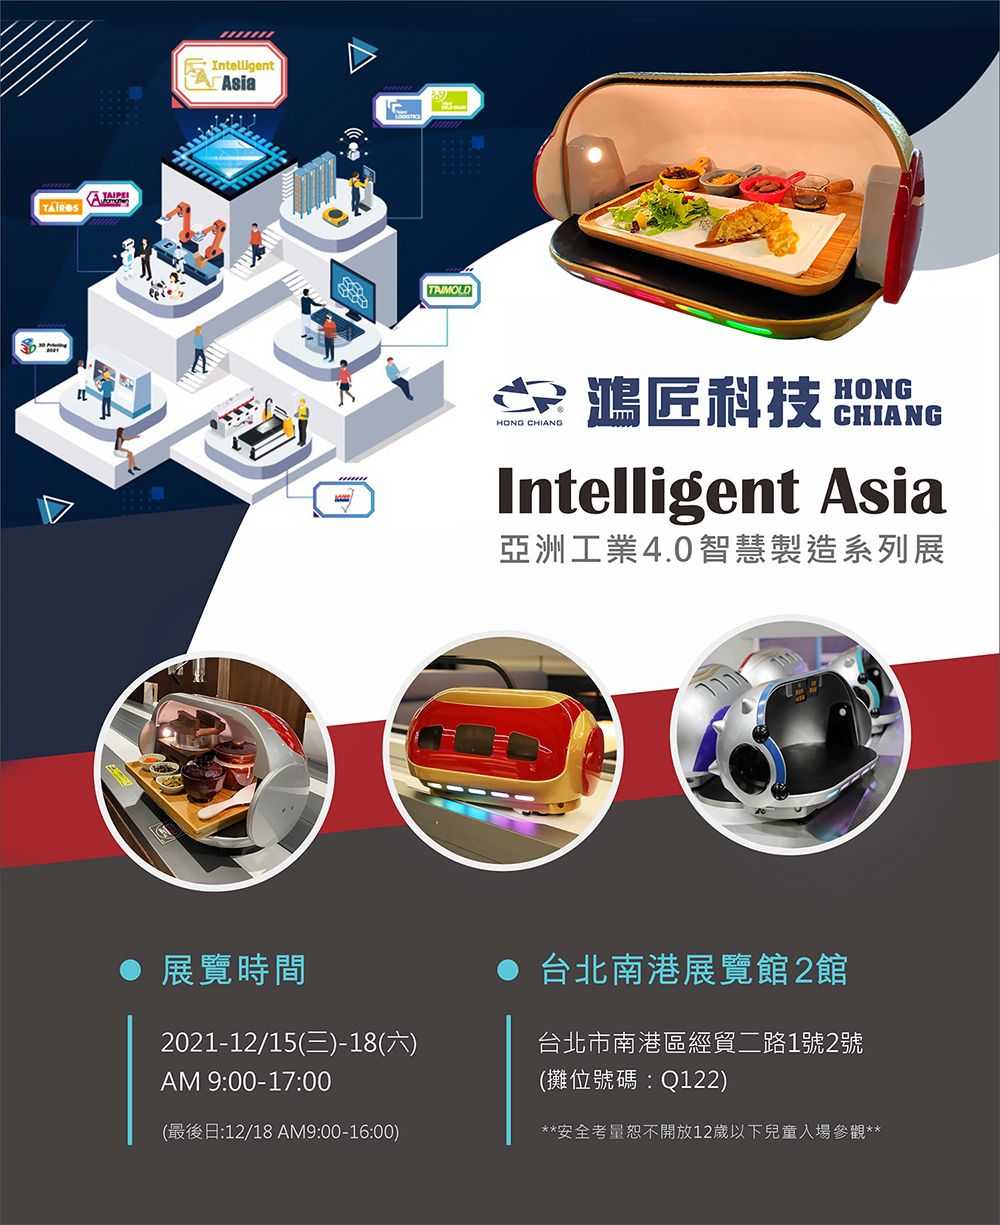 معرض تايوان لذكاء الأتمتة والروبوت